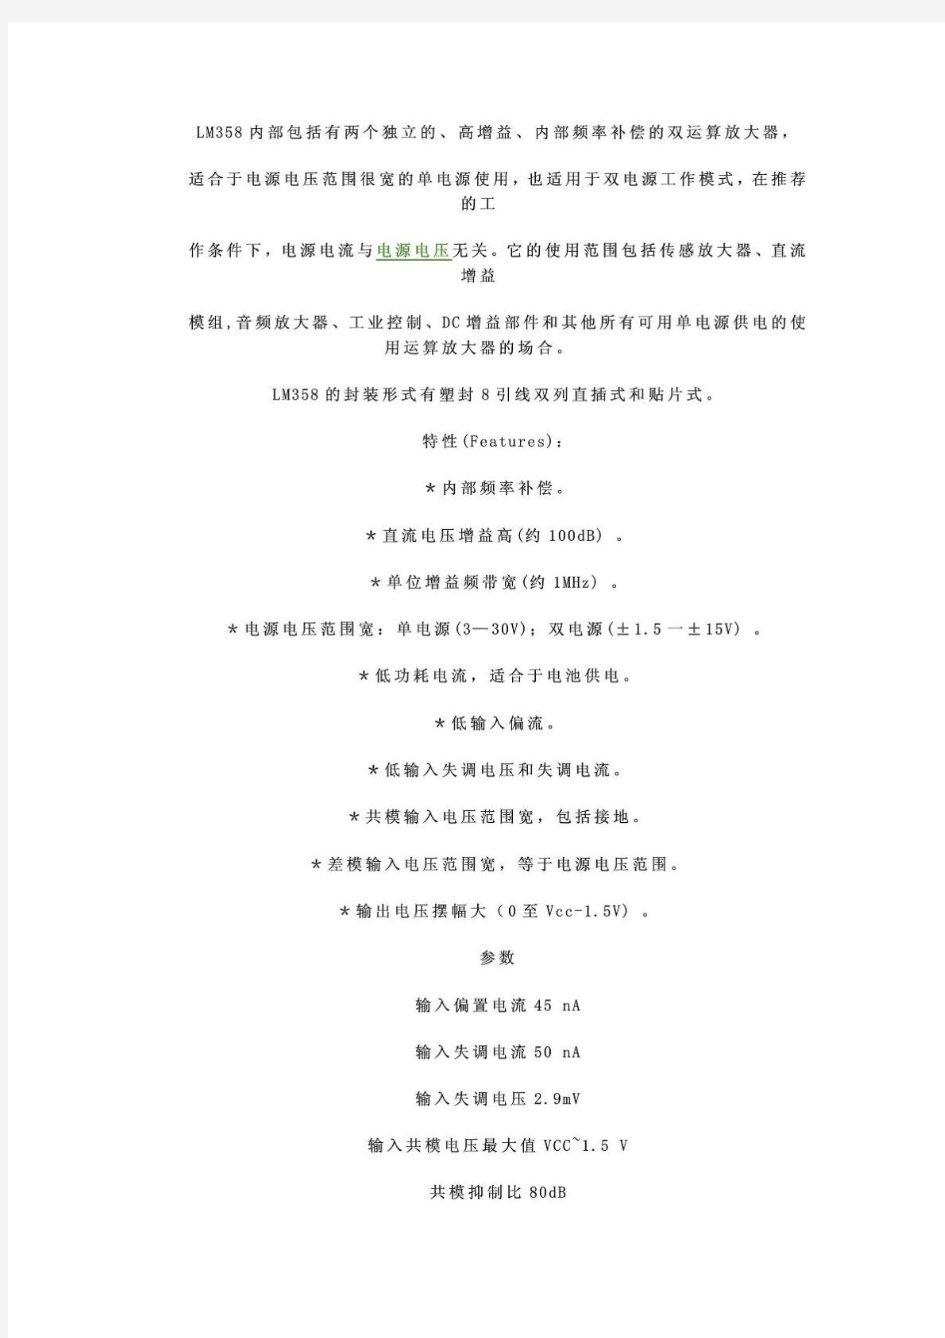 LM358中文资料及24个典型应用电路_挺有用的